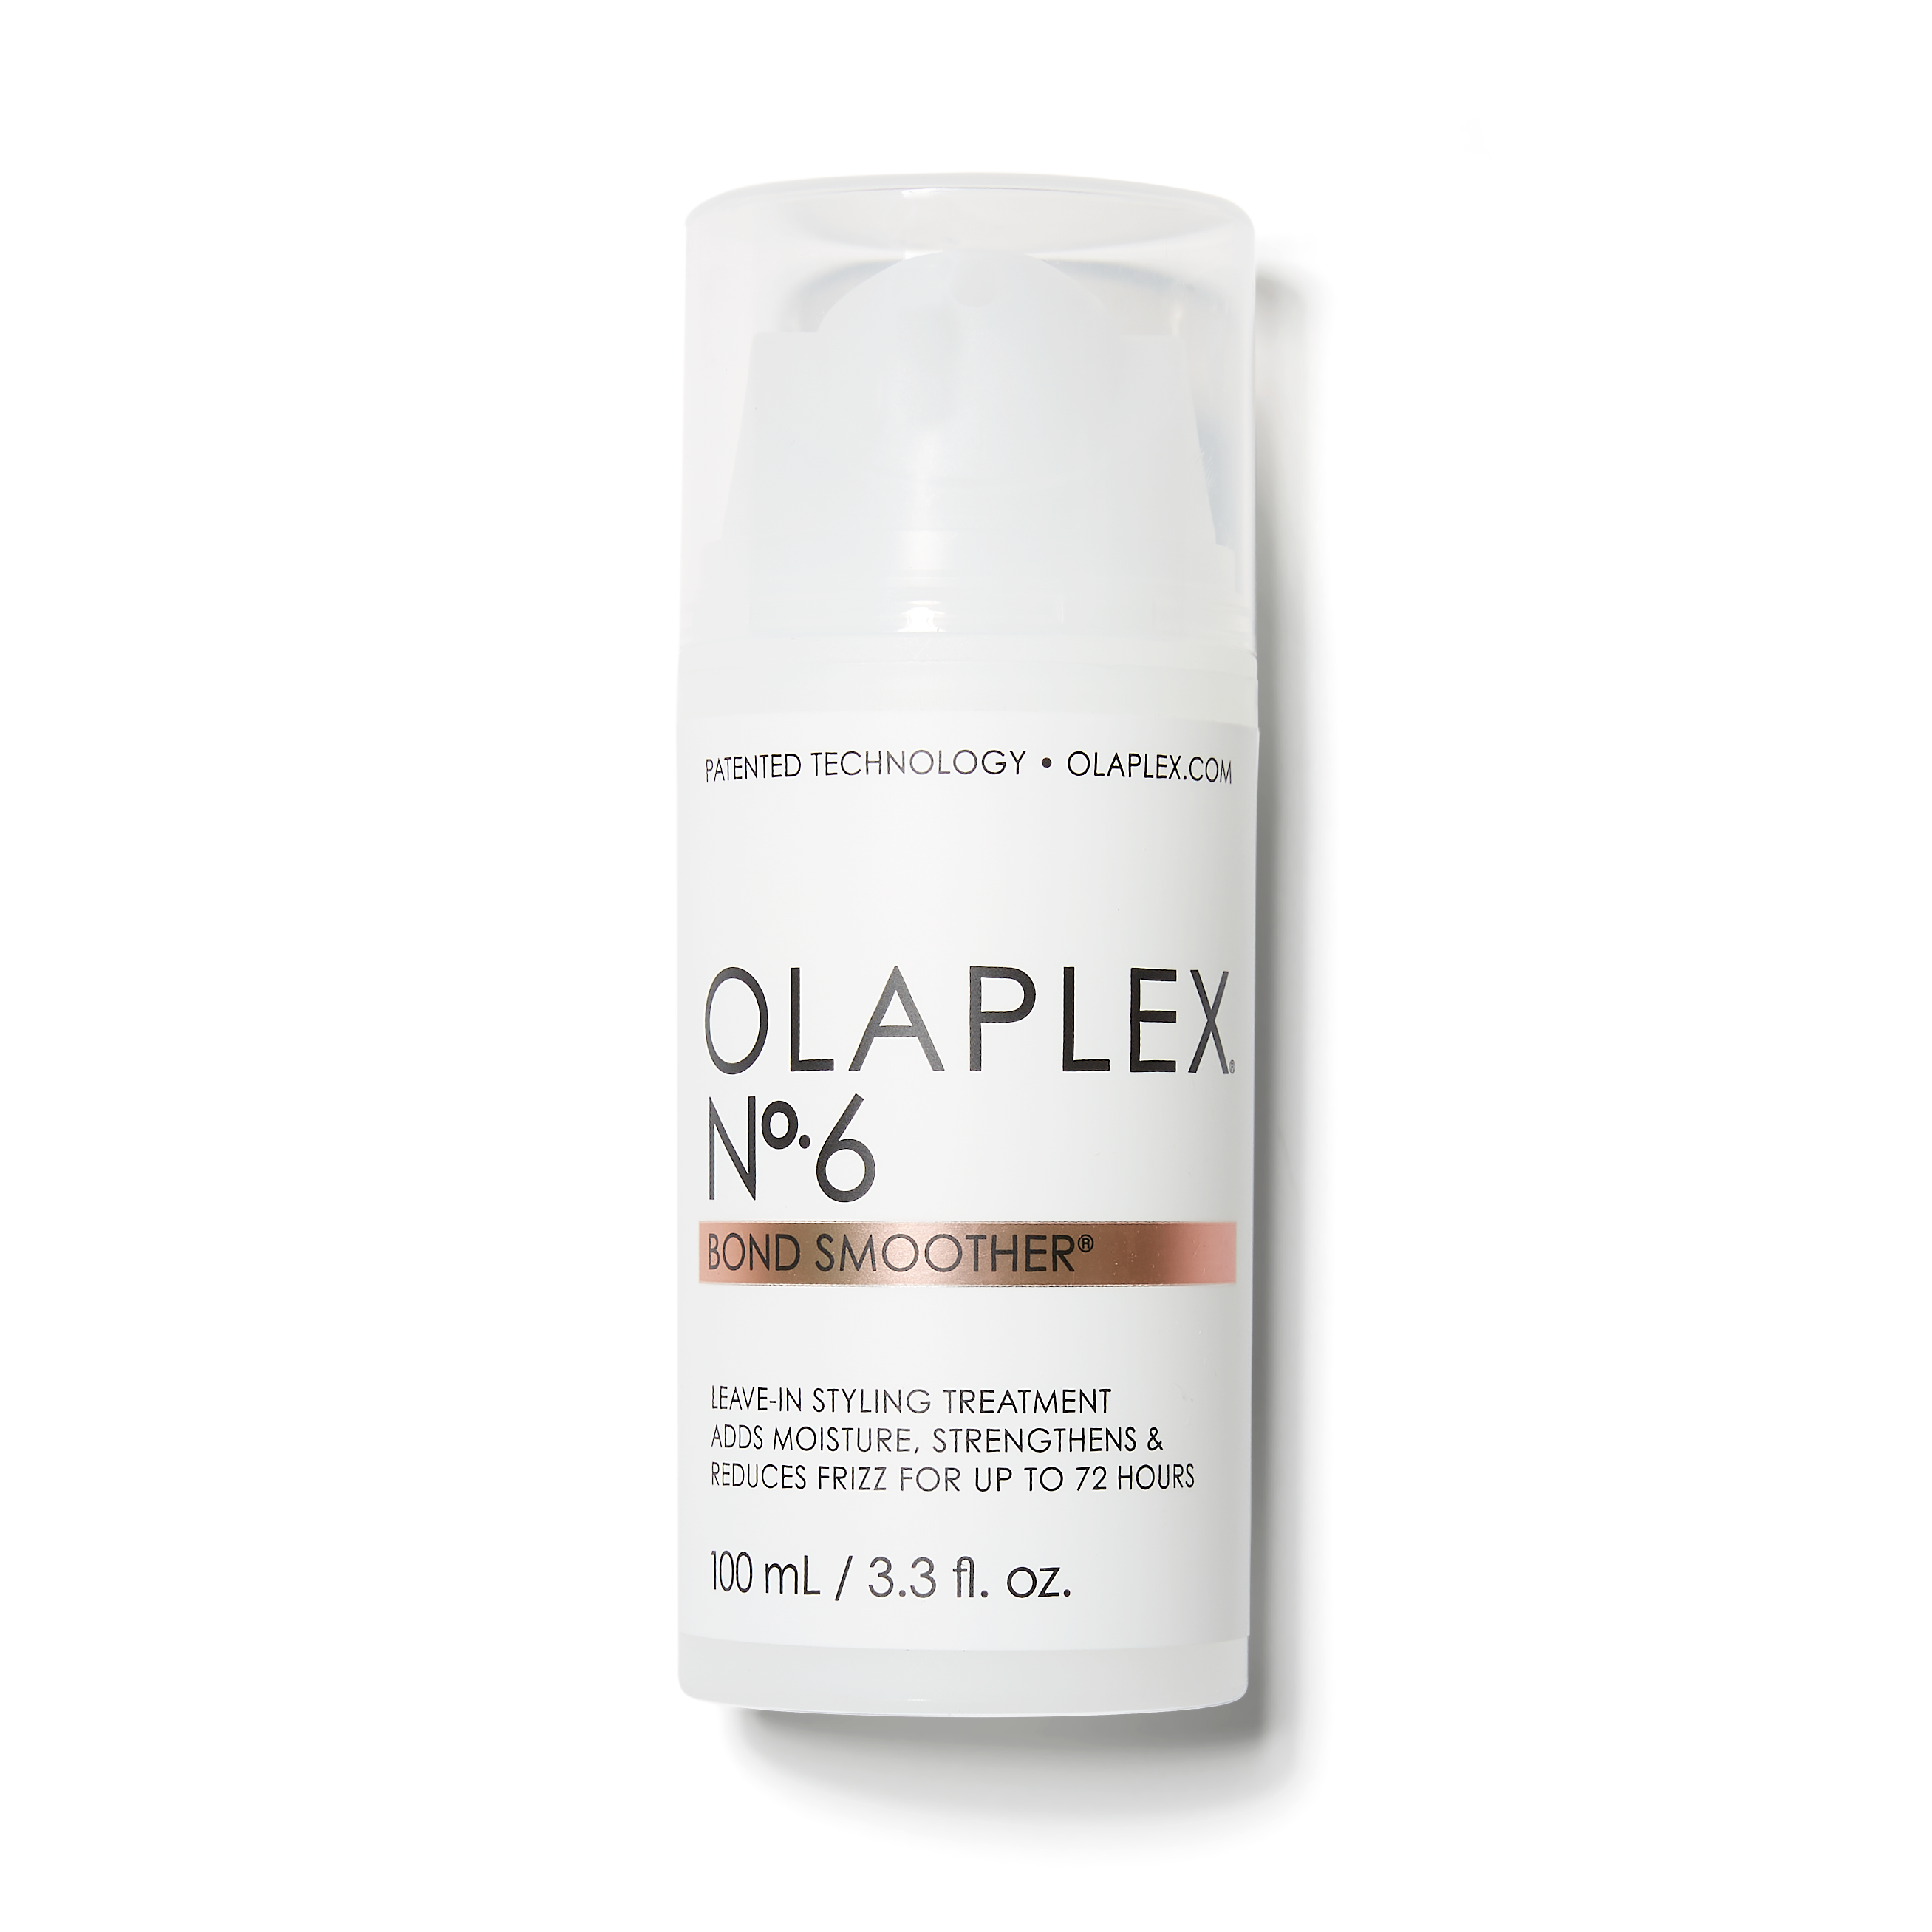 Olaplex No.6 Bond Smoother Leave-in Cream (100ml)